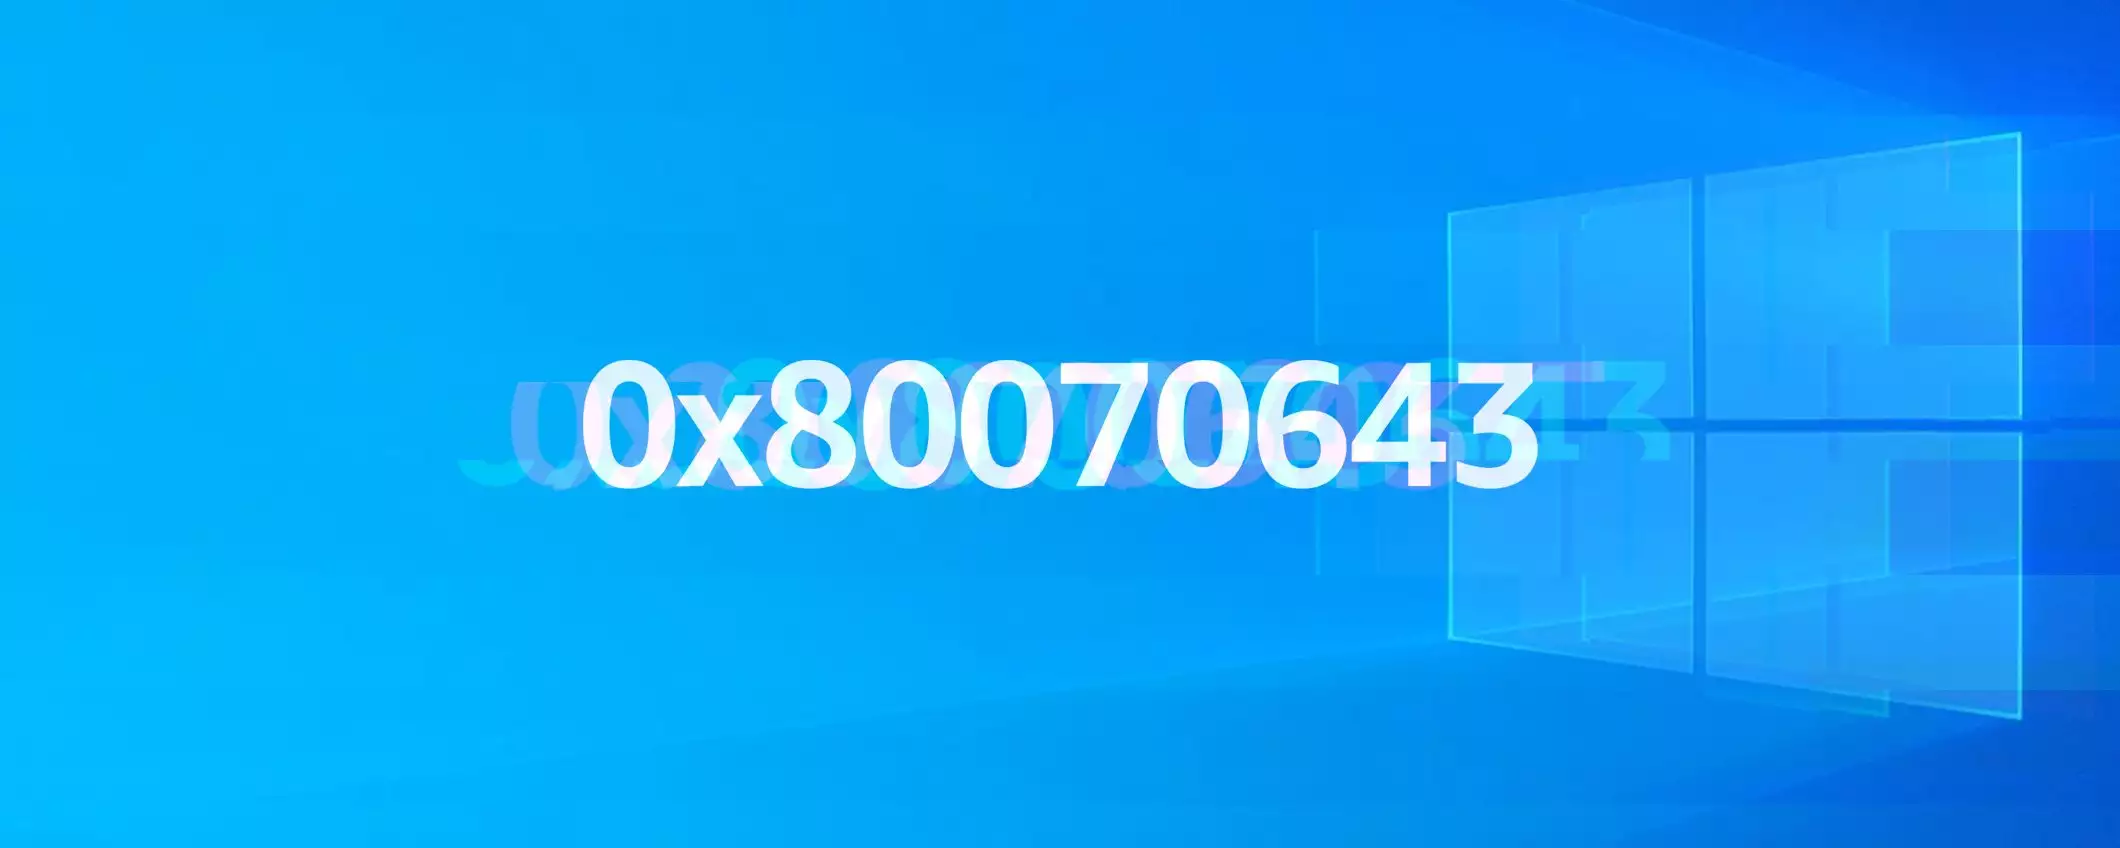 Windows 10: Microsoft non correggerà l'errore 0x80070643